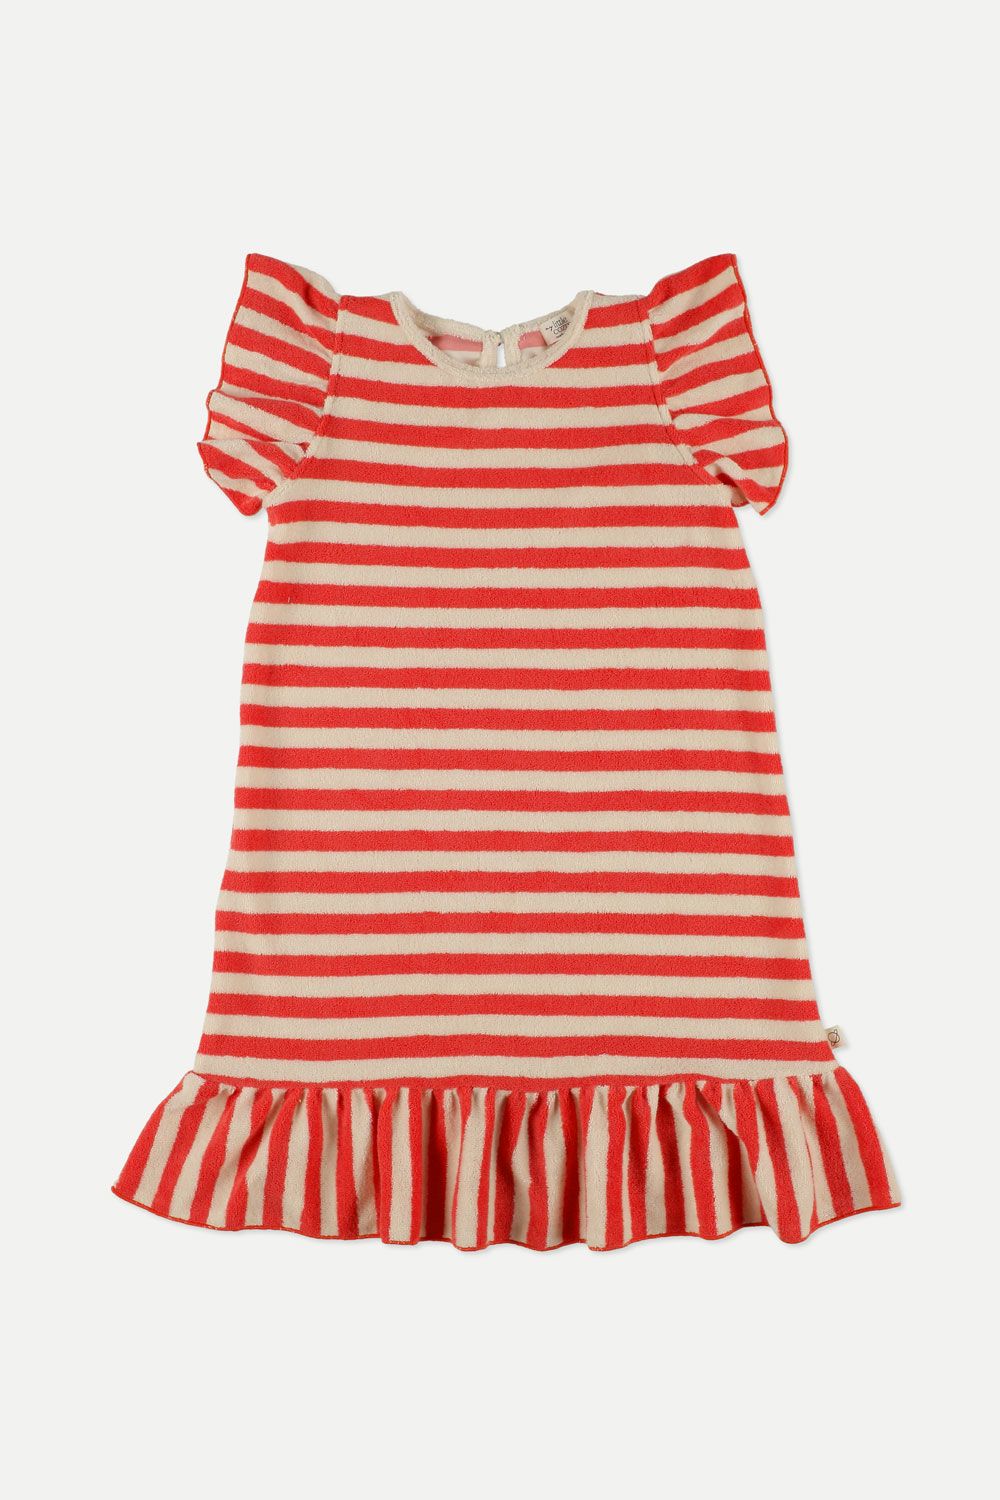 Little Cozmo toweling striped dress (SZ 2-12)